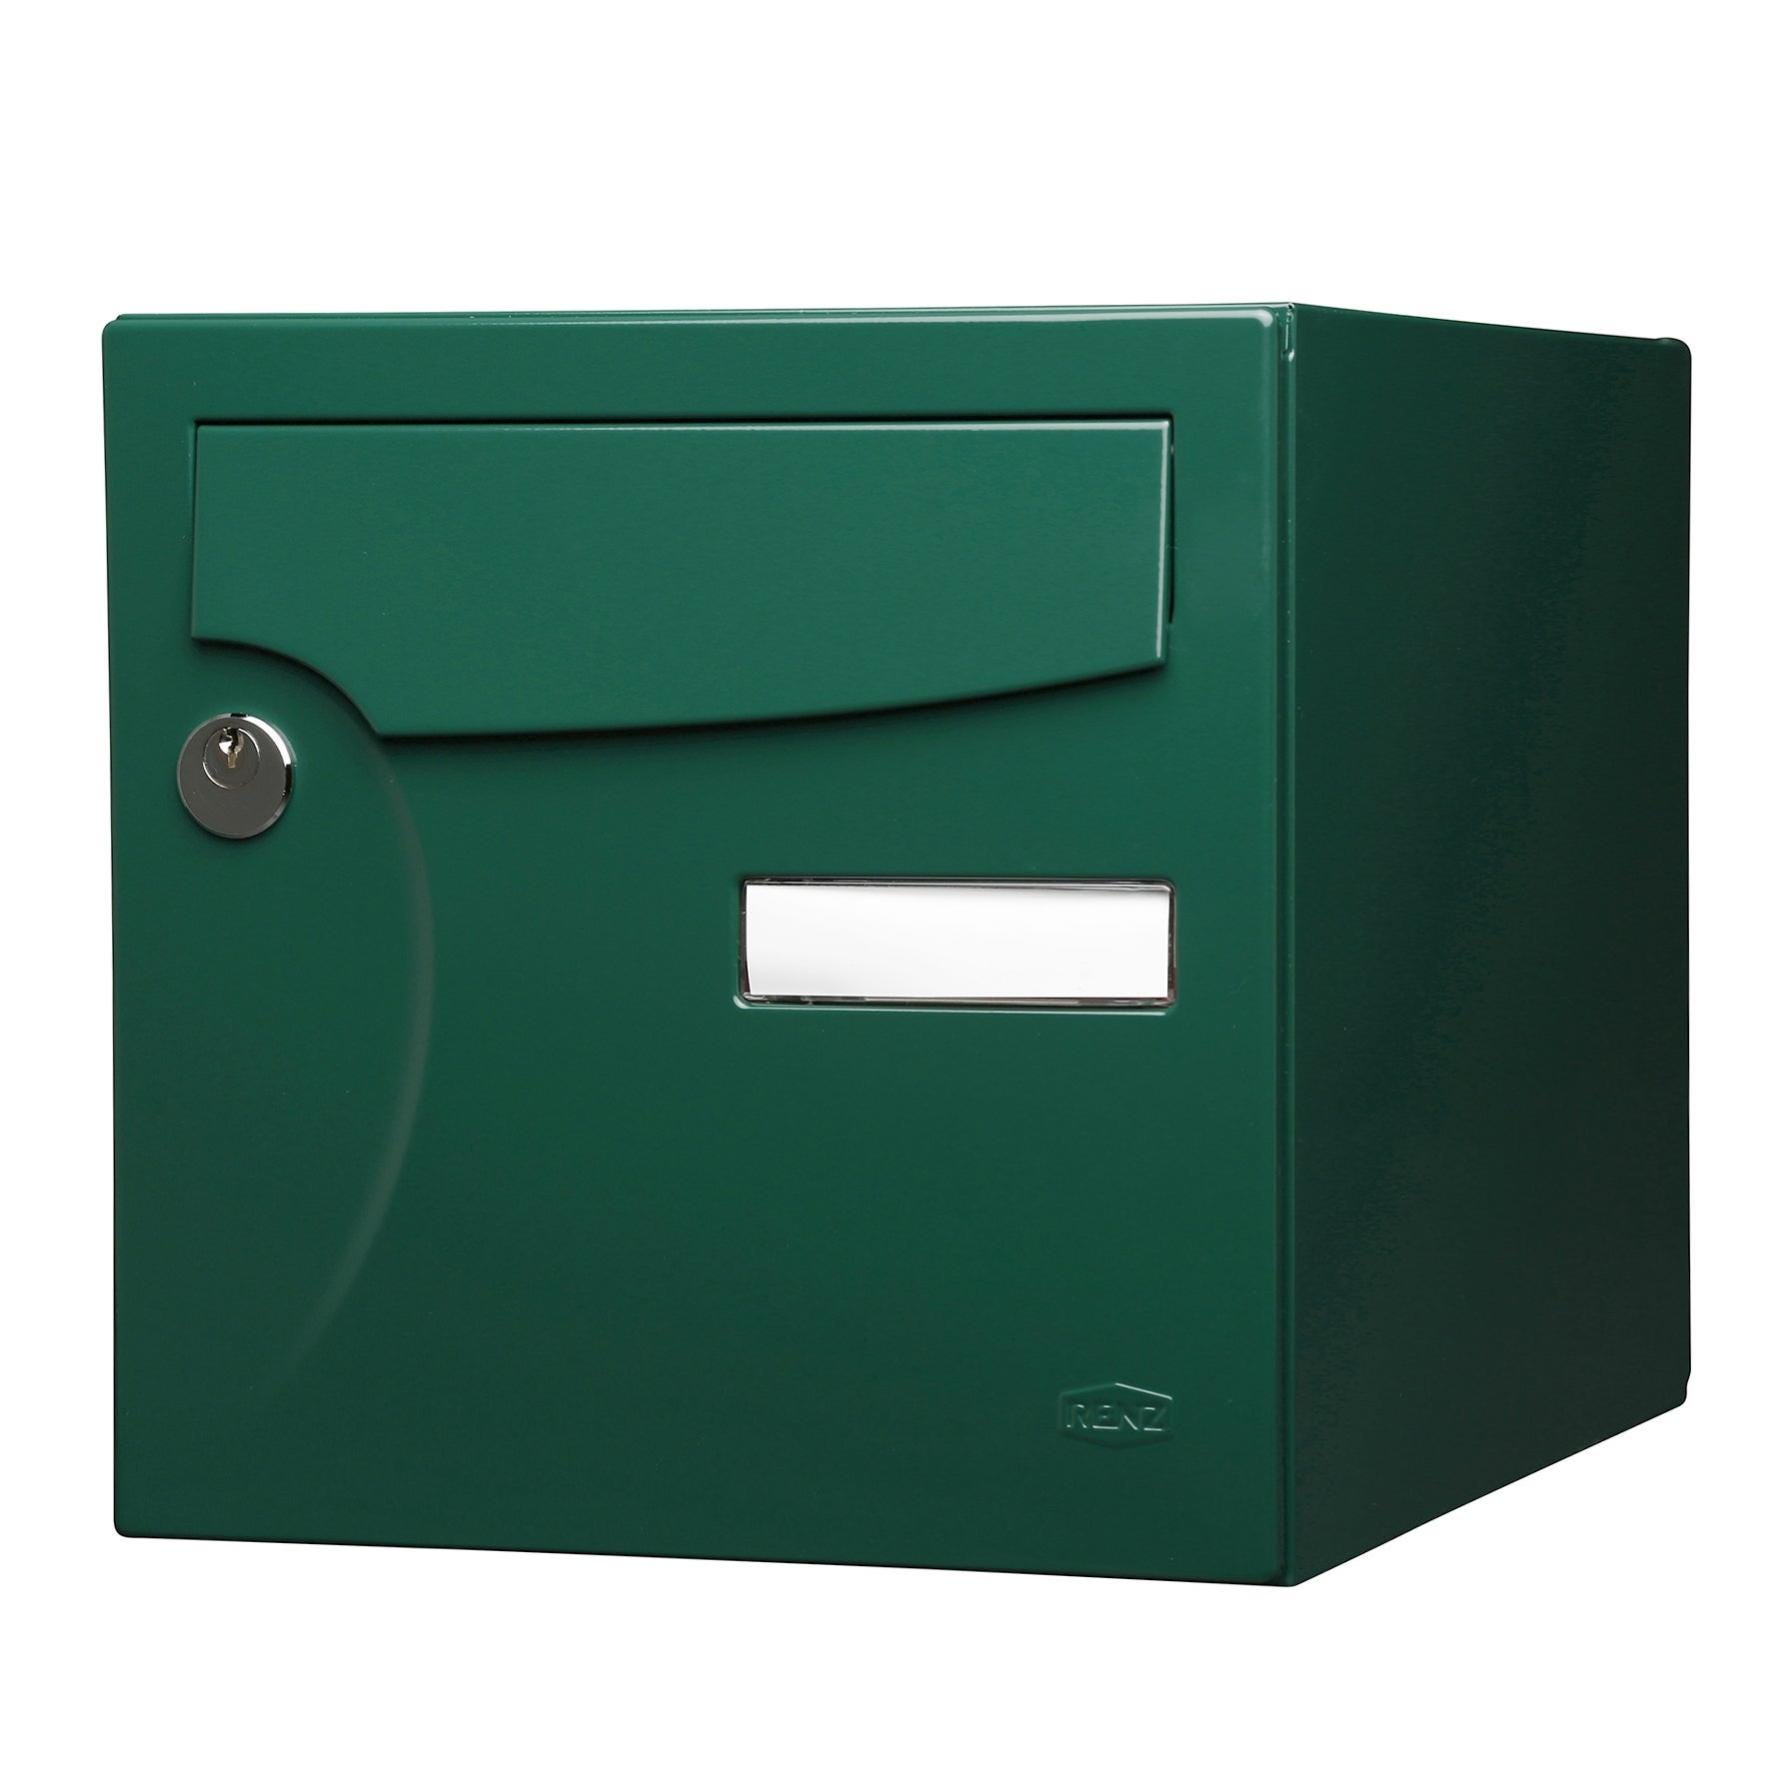 Boîte aux lettres normalisée 2 portes extérieur RENZ Animation acier vert